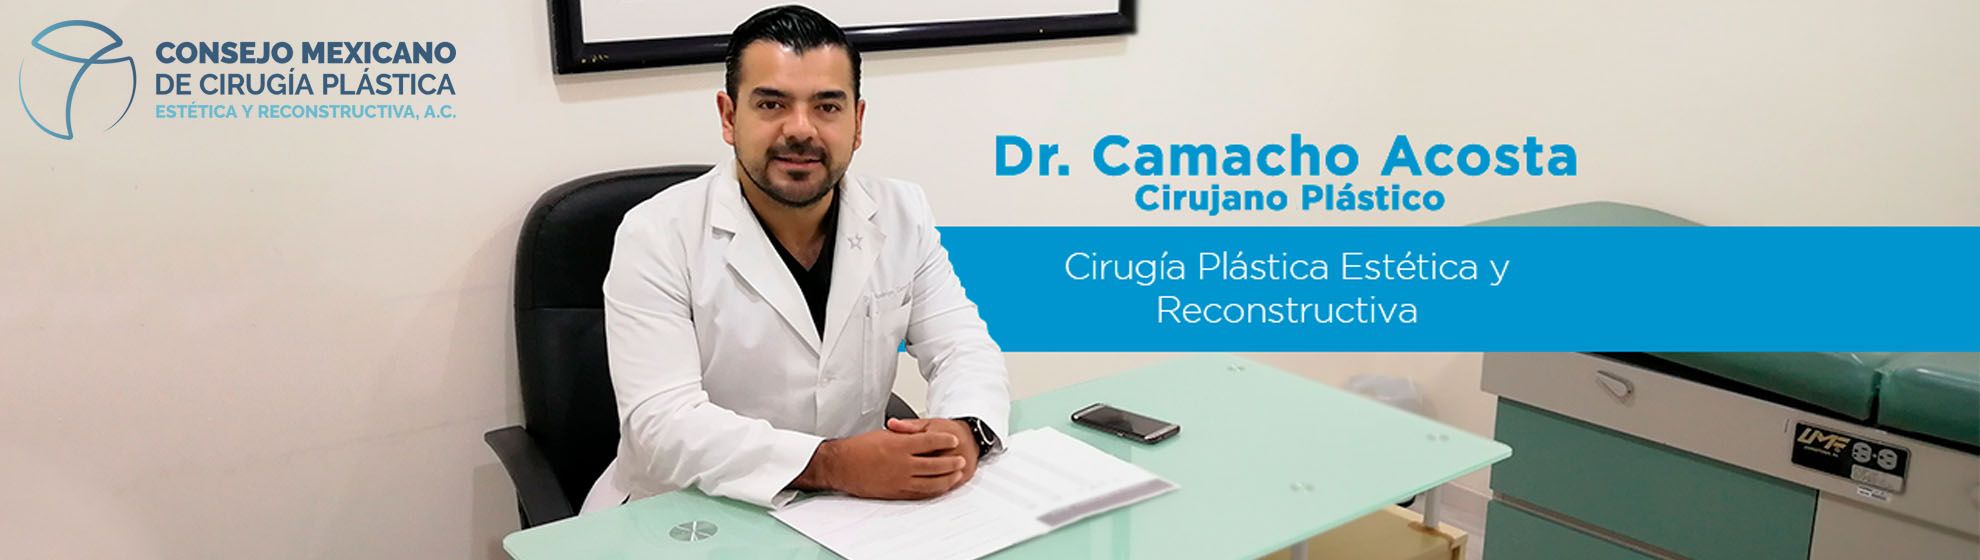 Dr. Rodrigo Camacho Acosta